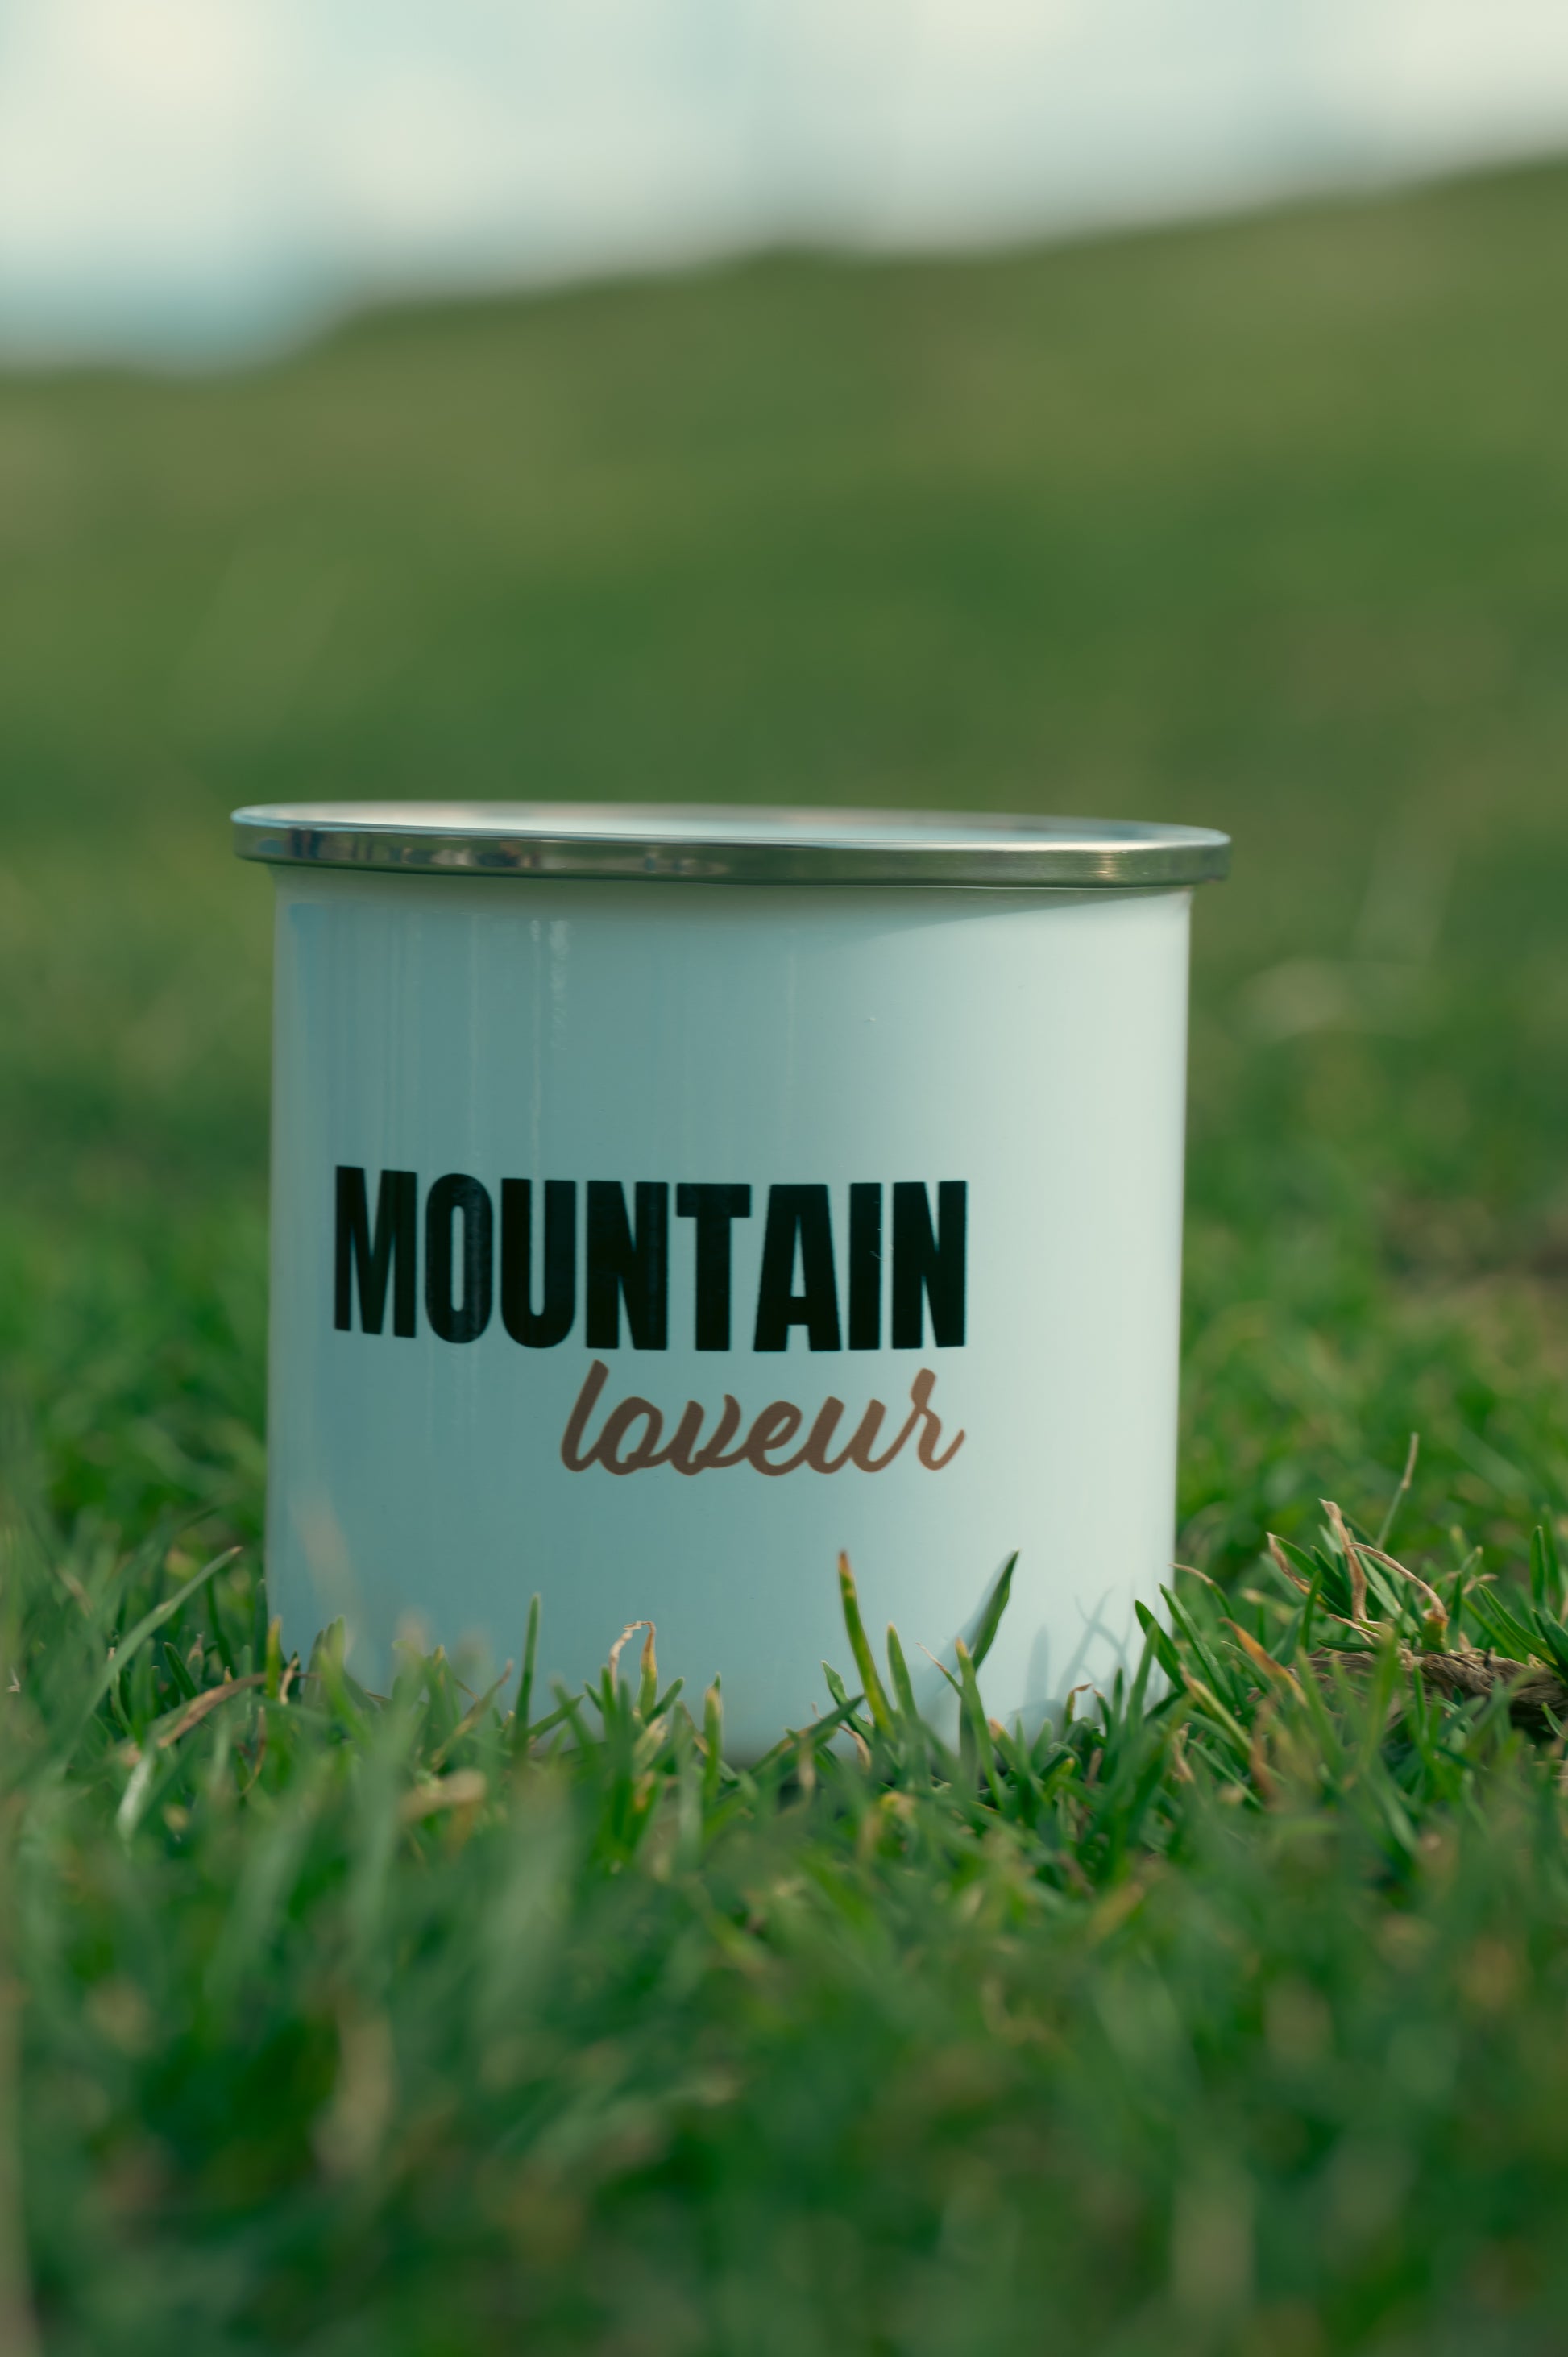 La photo montre un mug posé sur de l'herbe verte. Sur le mug, il y a l'inscription "MOUNTAIN lover" en lettres noires. Le mug semble être de couleur bleu clair avec le bord supérieur en argent ou en métal. En arrière-plan, l'image est floue, mais on peut deviner un paysage verdoyant.